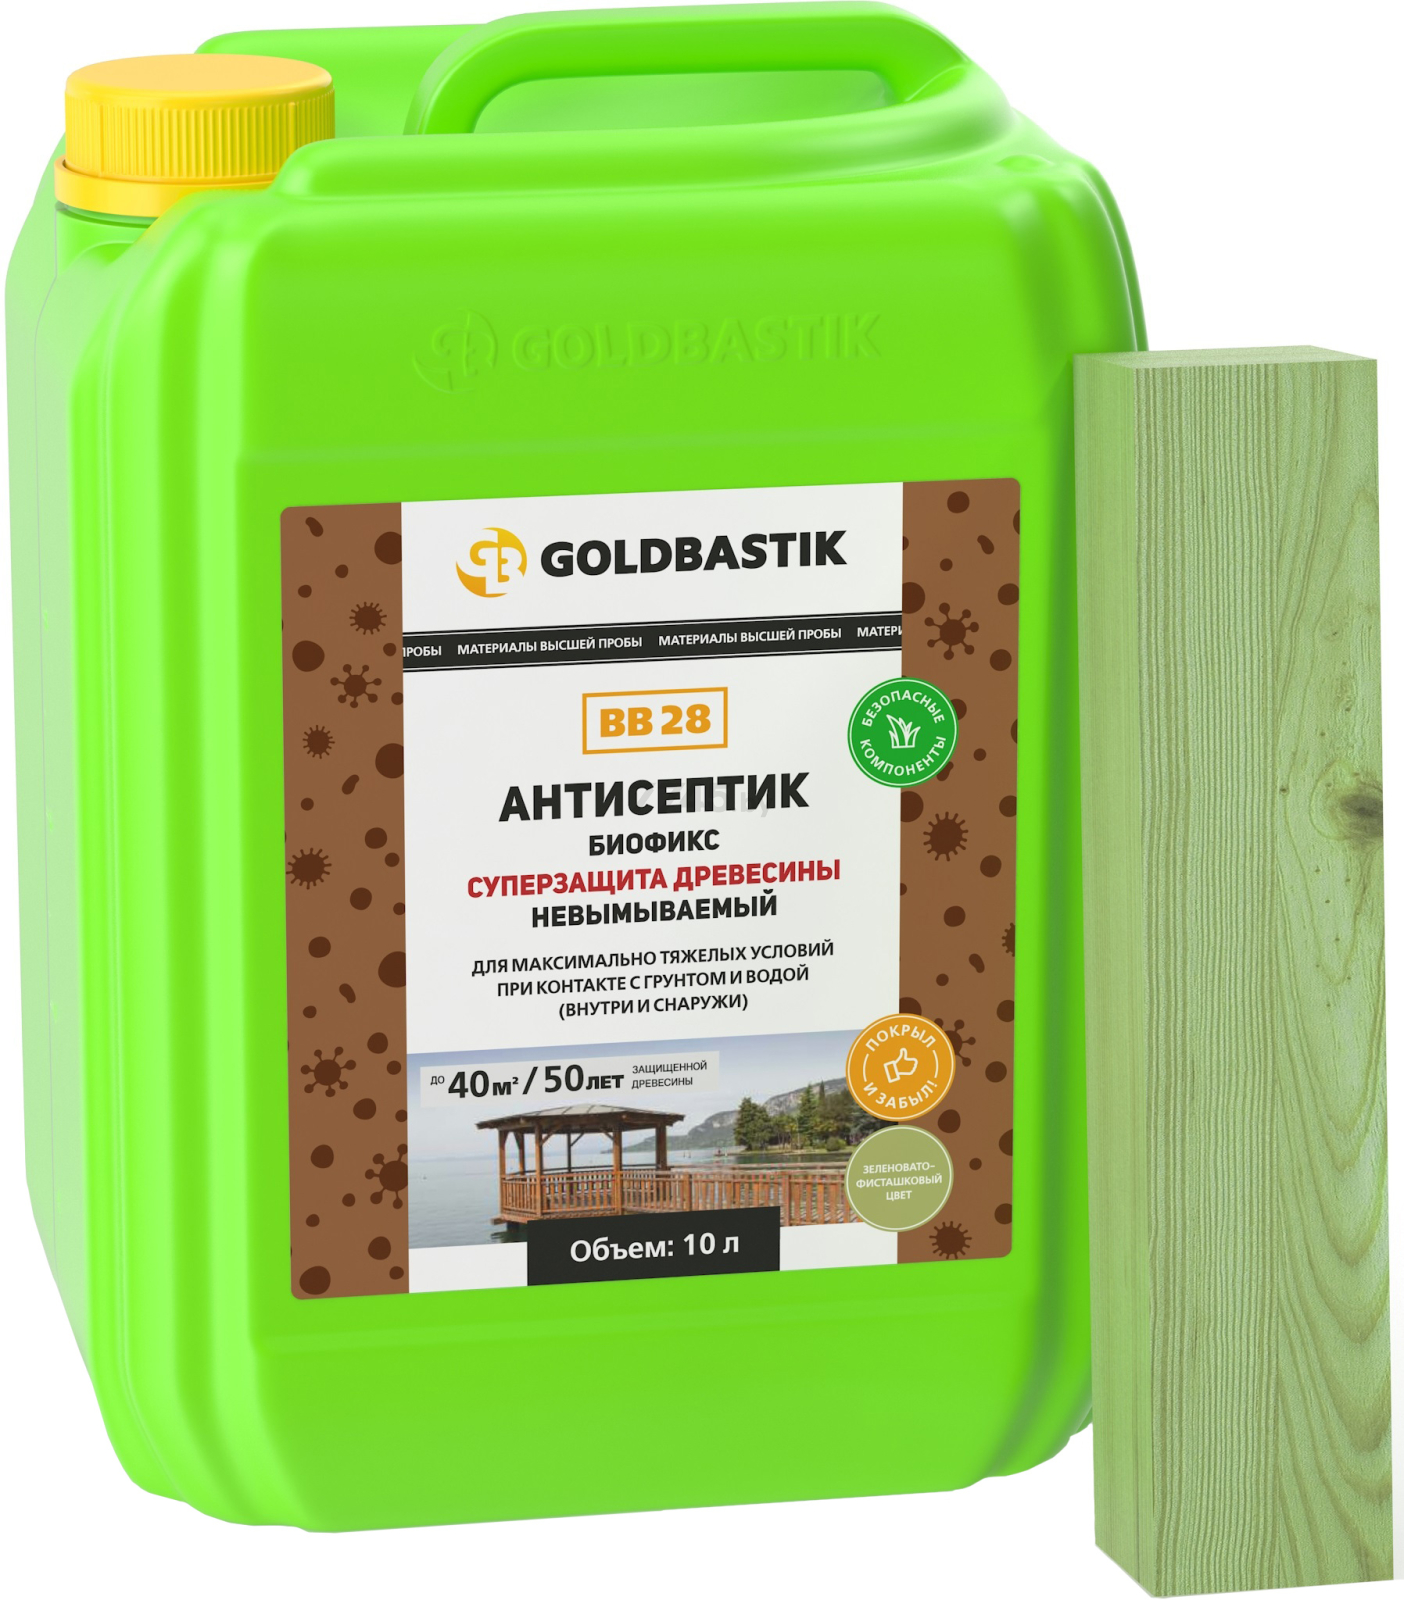 Антисептик GOLDBASTIK Биофикс Суперзащита древесины 10 л (ВВ 28)